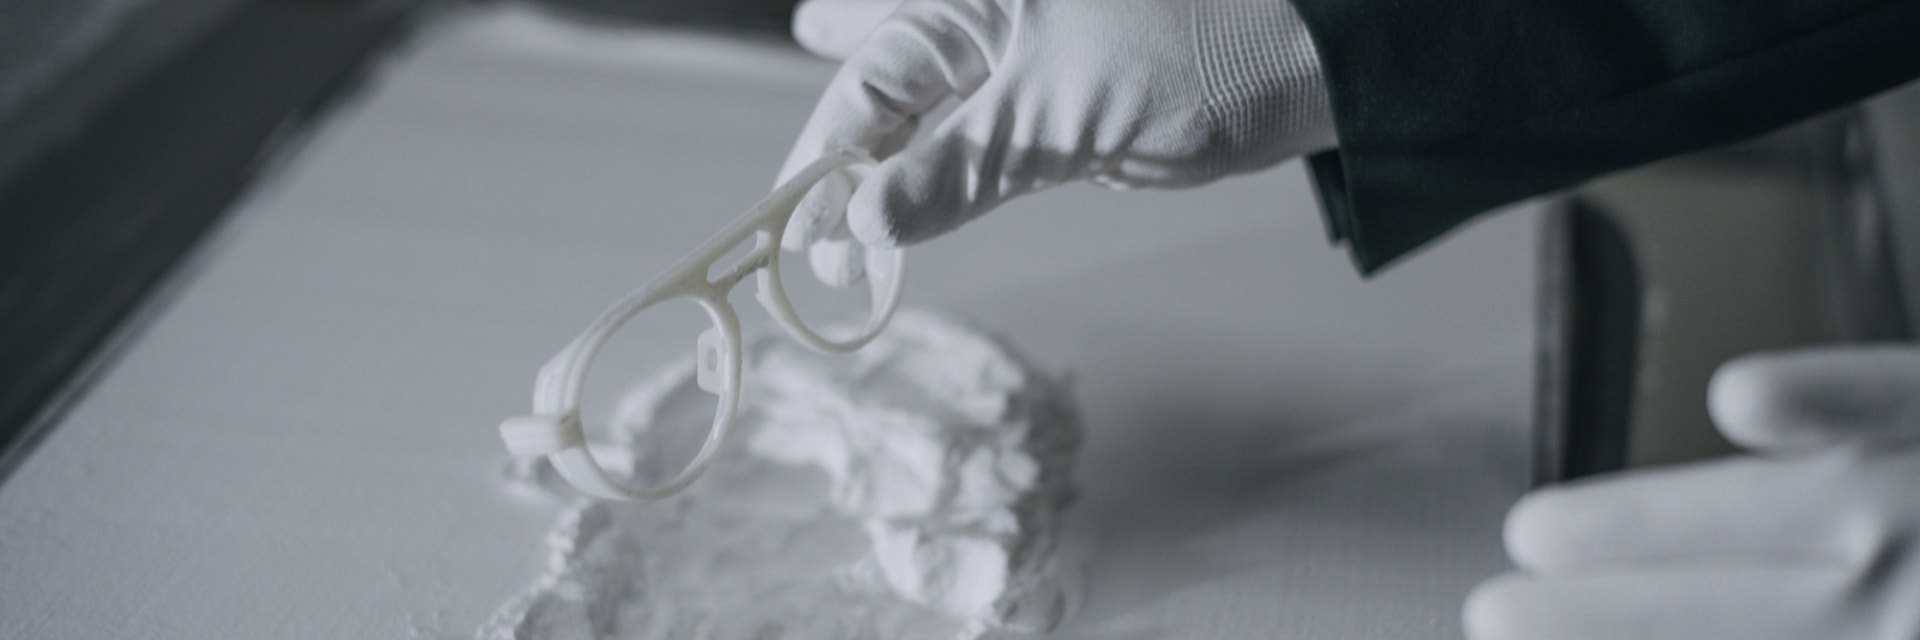 Mains gantées retirant des montures de lunettes Odette Lunettes imprimées en 3D d'un lit de poudre